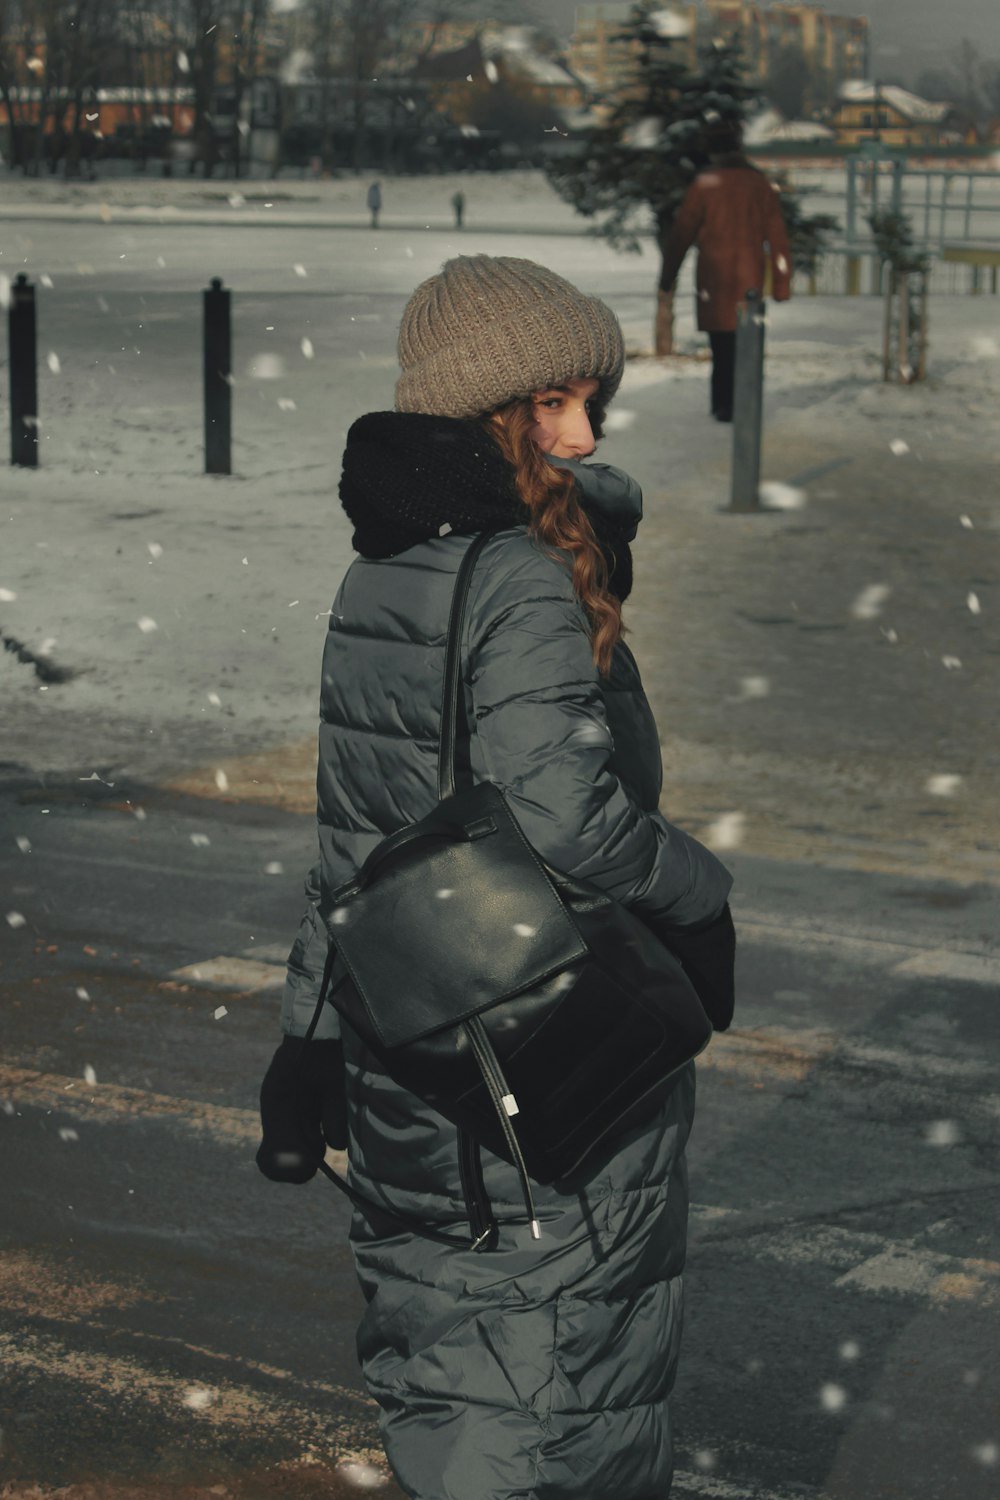 검은 가죽 재킷과 갈색 니트 모자를 쓴 여자가 낮 동안 도로에 서 있다